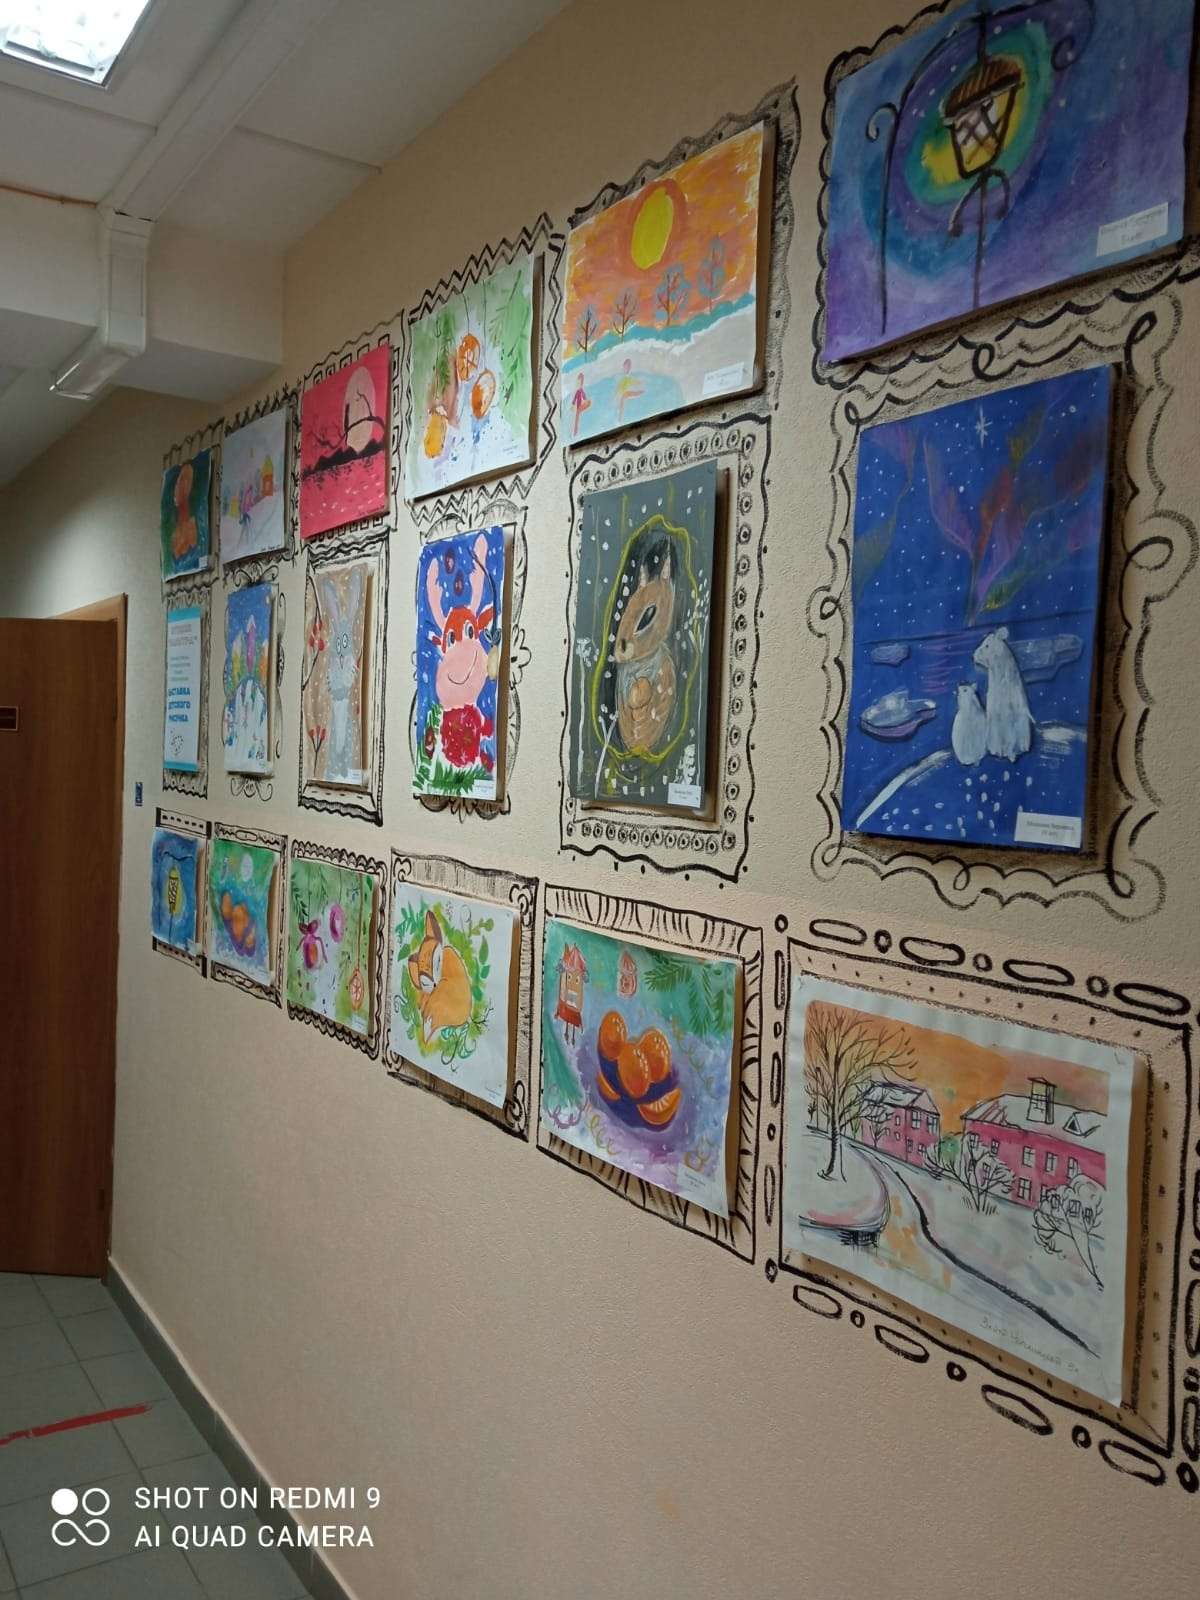 В Молодежном центре "Вираж" открылось новое творческое пространство, где в преддверии Нового года размещены детские рисунки студии изобразительного искусства "Палитра" под руководством педагога Р